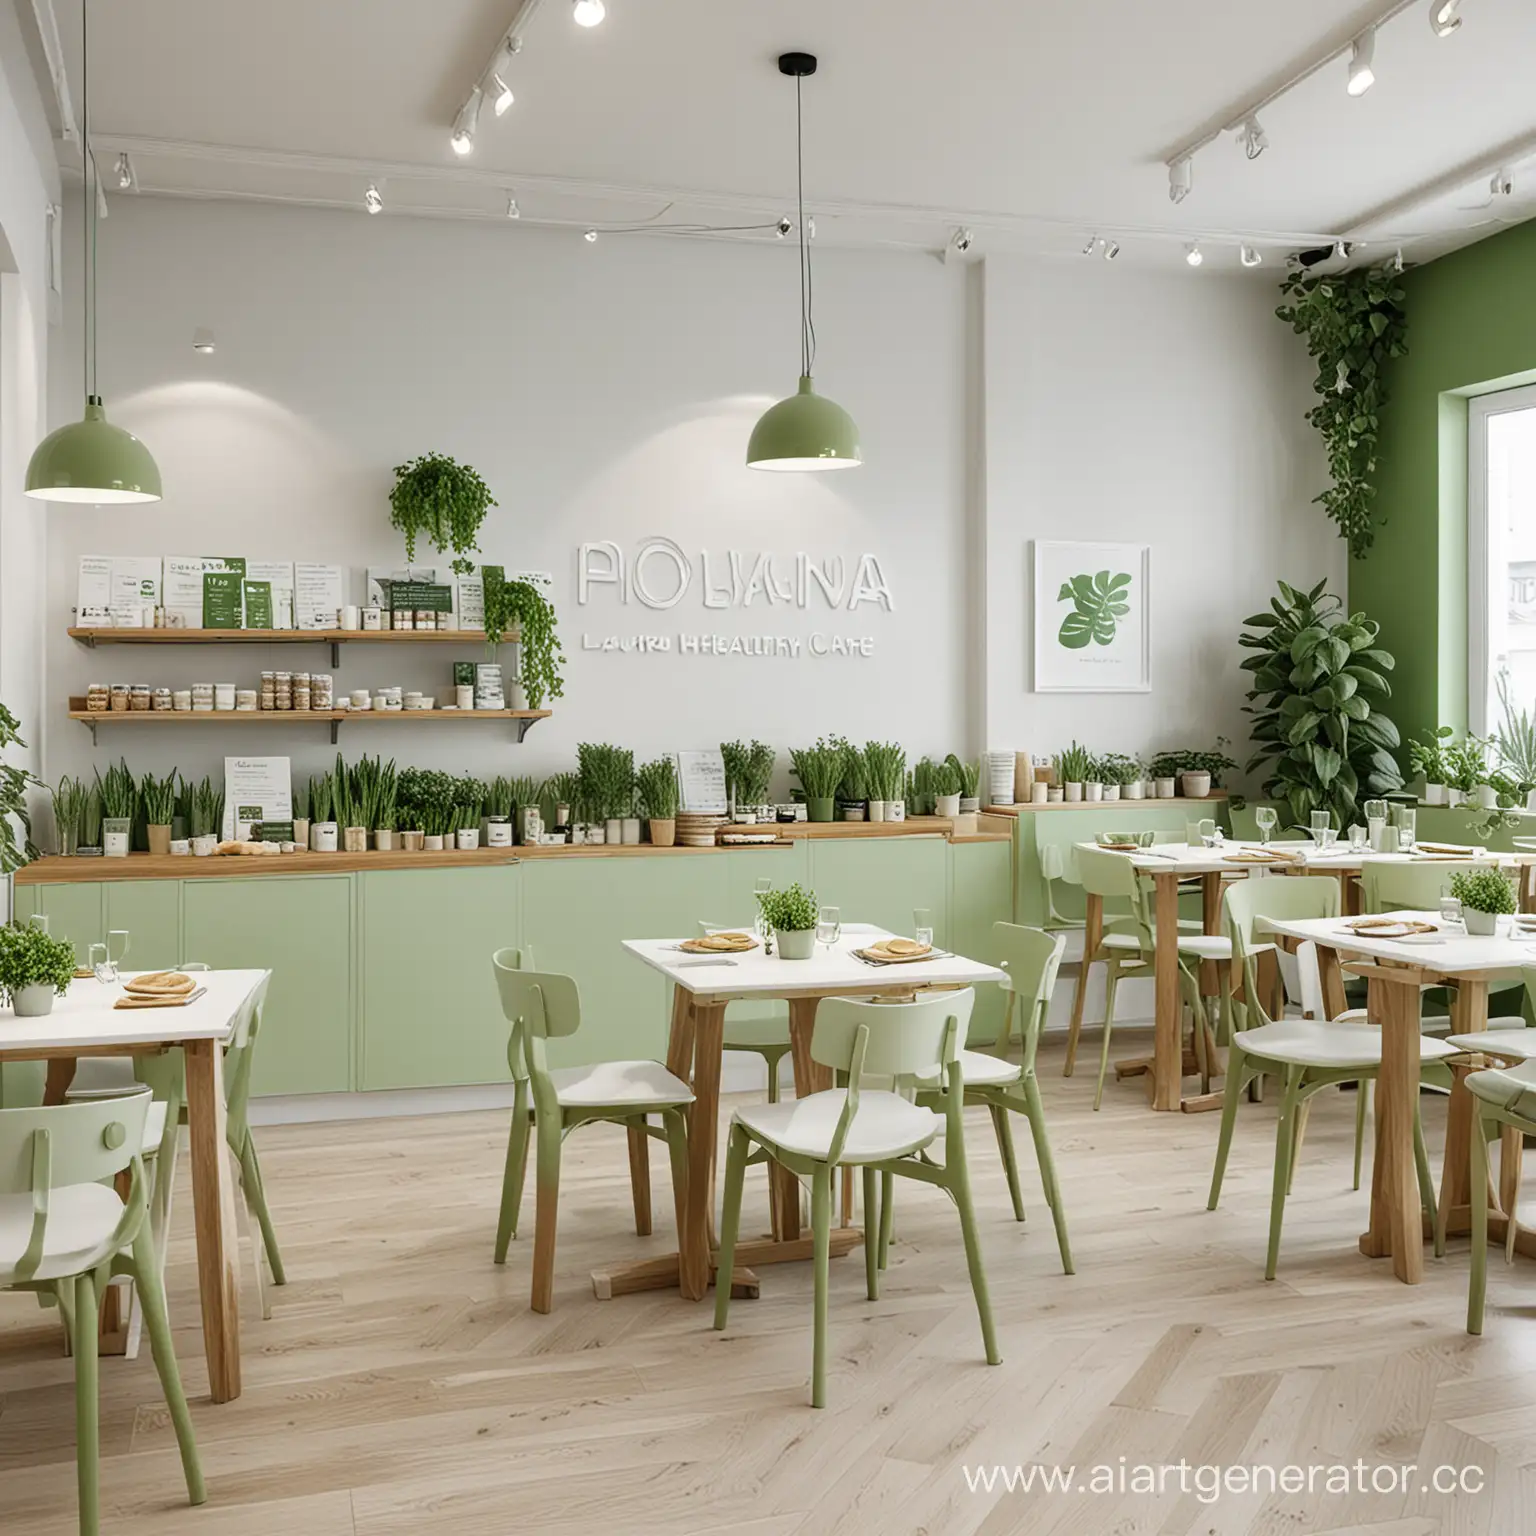 Сгенерируй много изображений кафе здорового питания «Поляна», преимущественно в белых и зеленых цветах